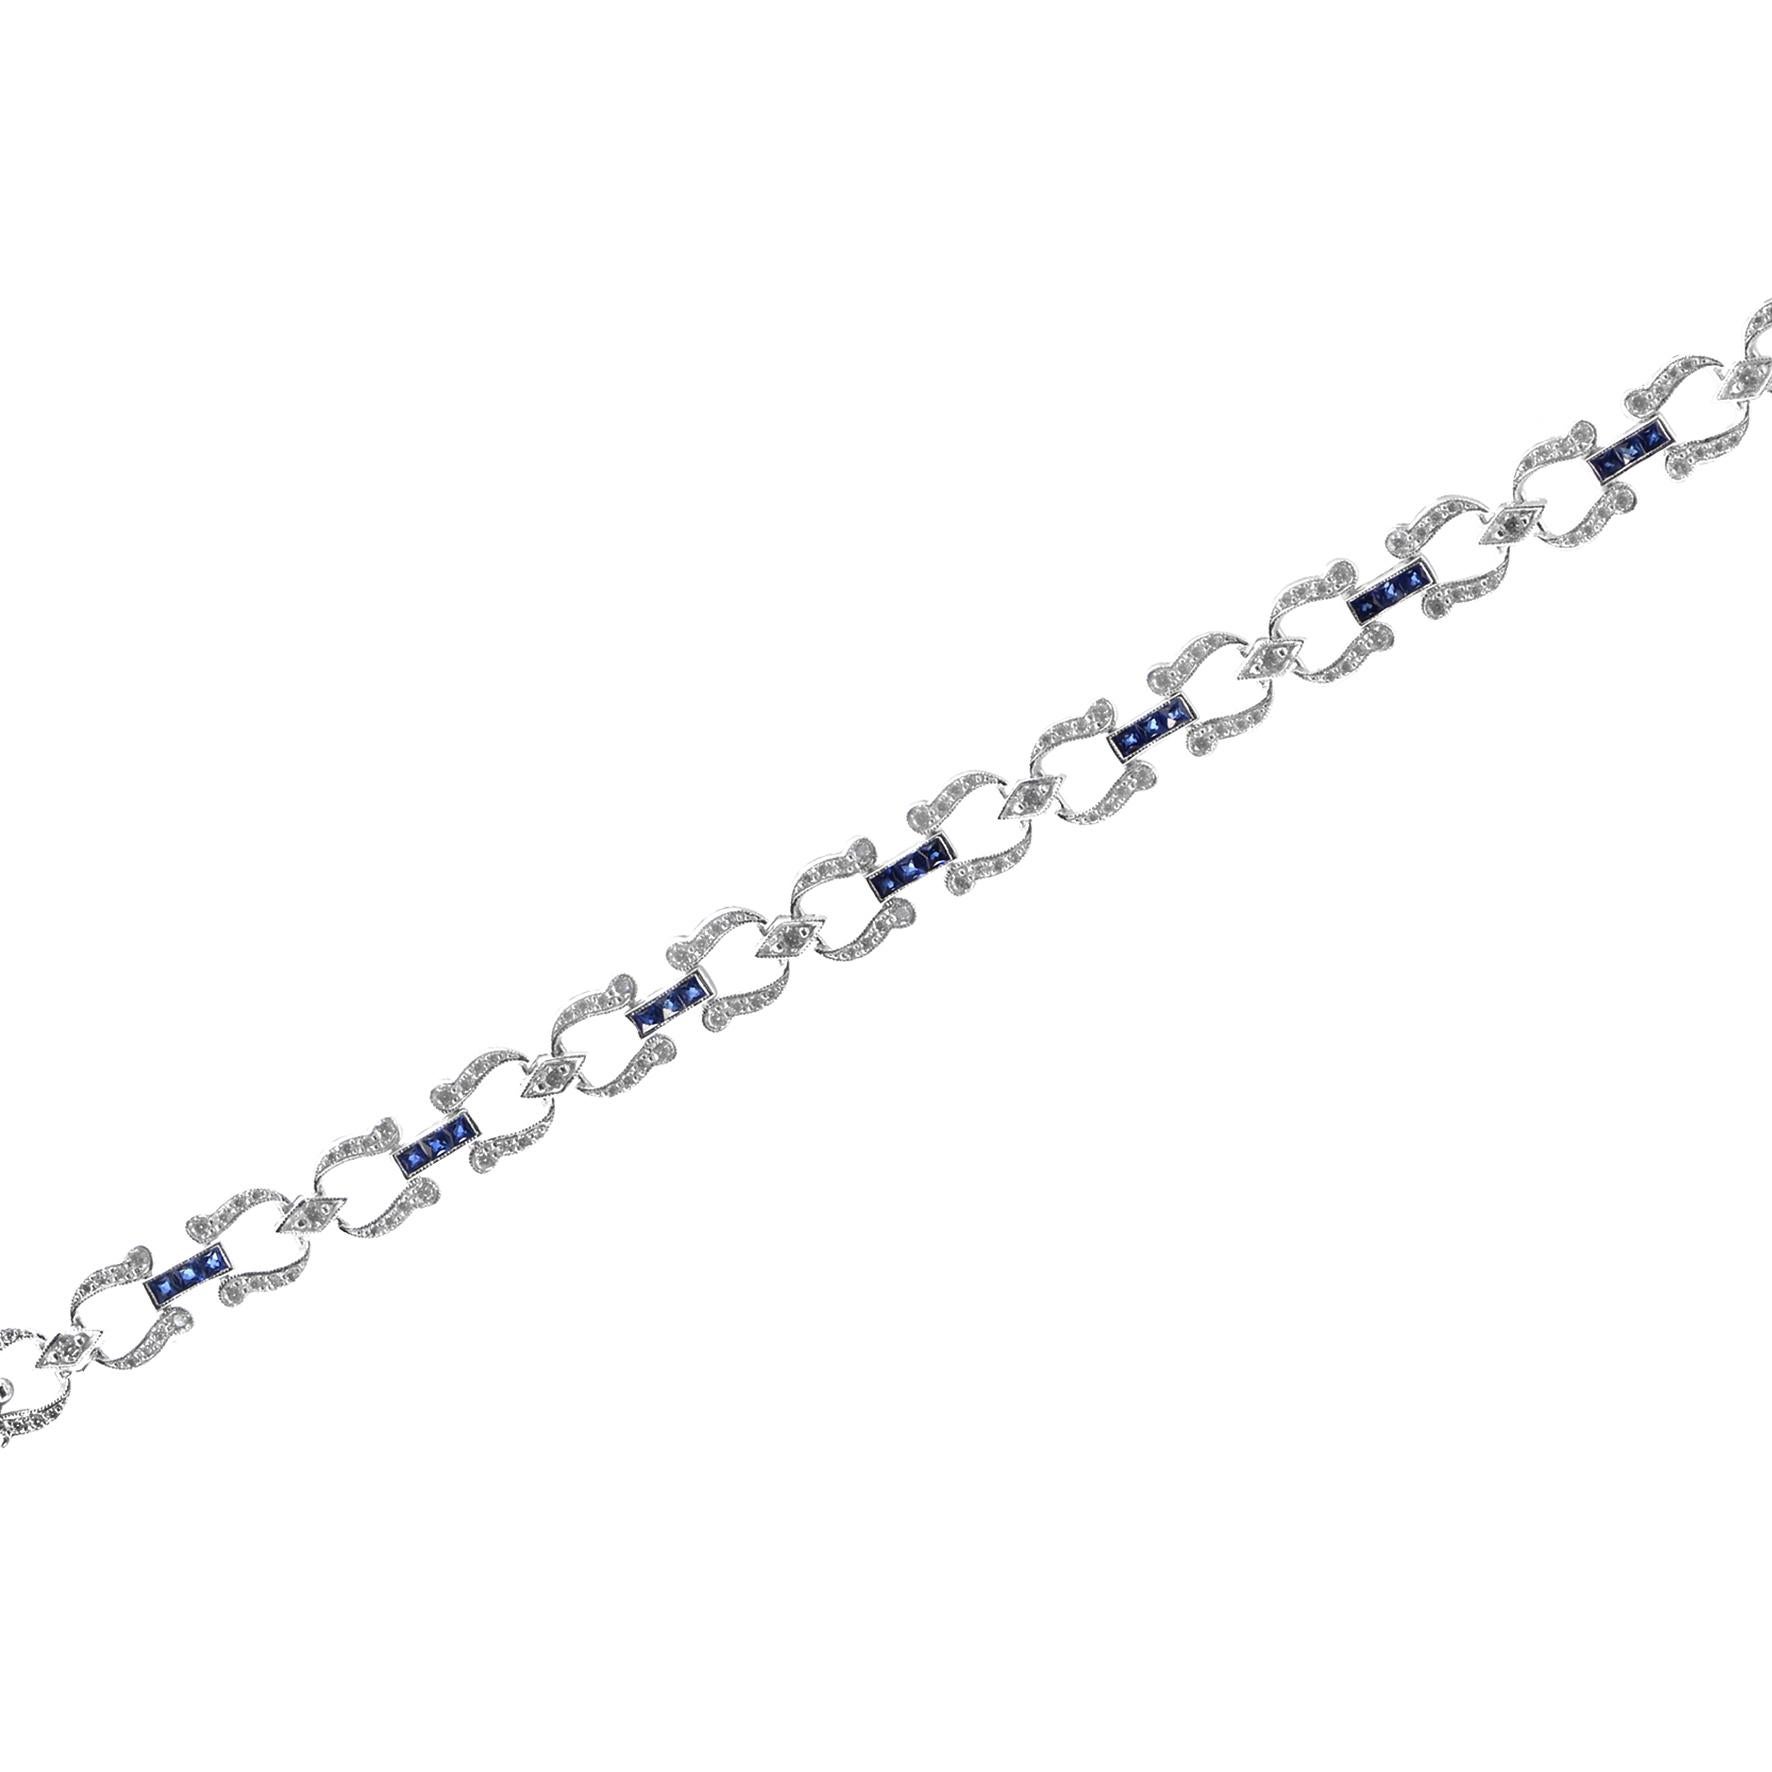 Dieses handgefertigte Armband aus atemberaubenden blauen Saphiren im französischen Schliff und Diamanten ist perfekt für den Abend oder den Tag geeignet. Jeder einzelne Abschnitt ist mit runden Diamanten besetzt und wird durch eine Saphirlinie von